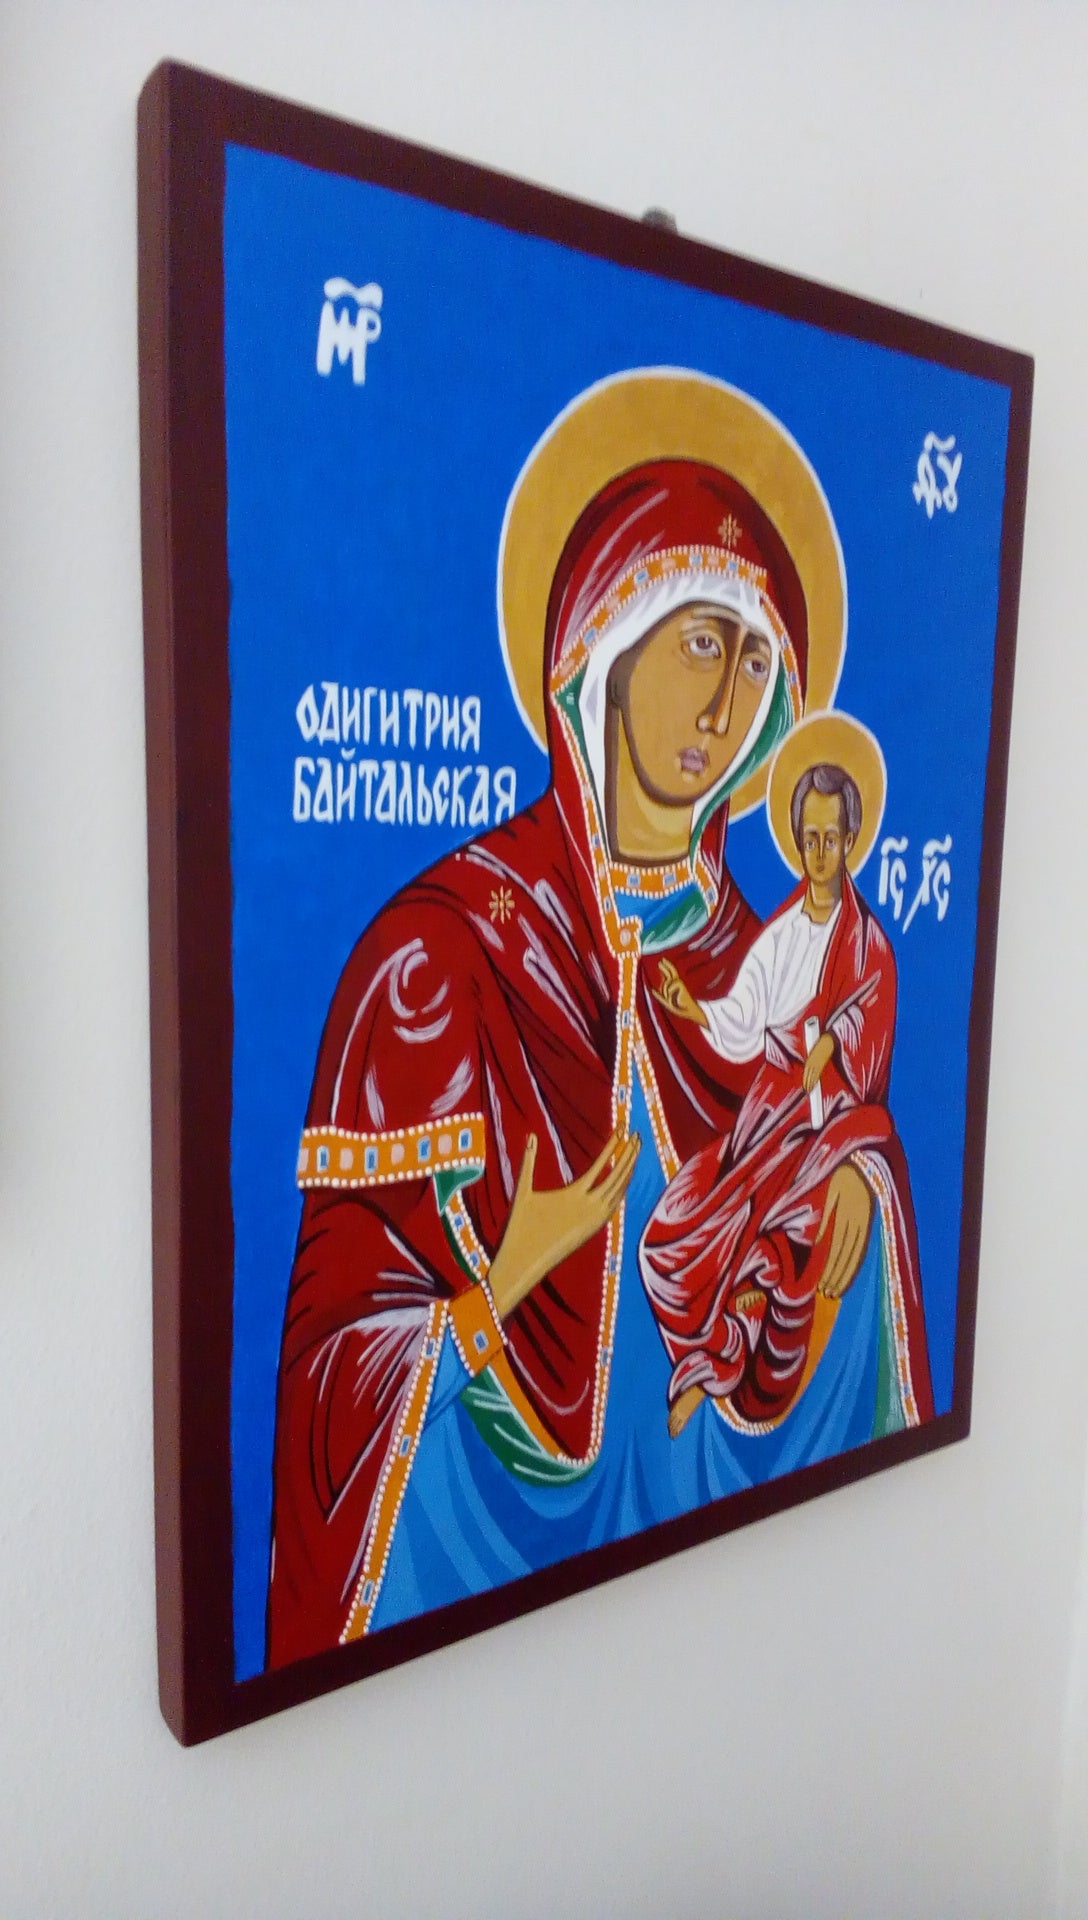 Mother of God Odighitria Baytalskaya - HandmadeIconsGreece